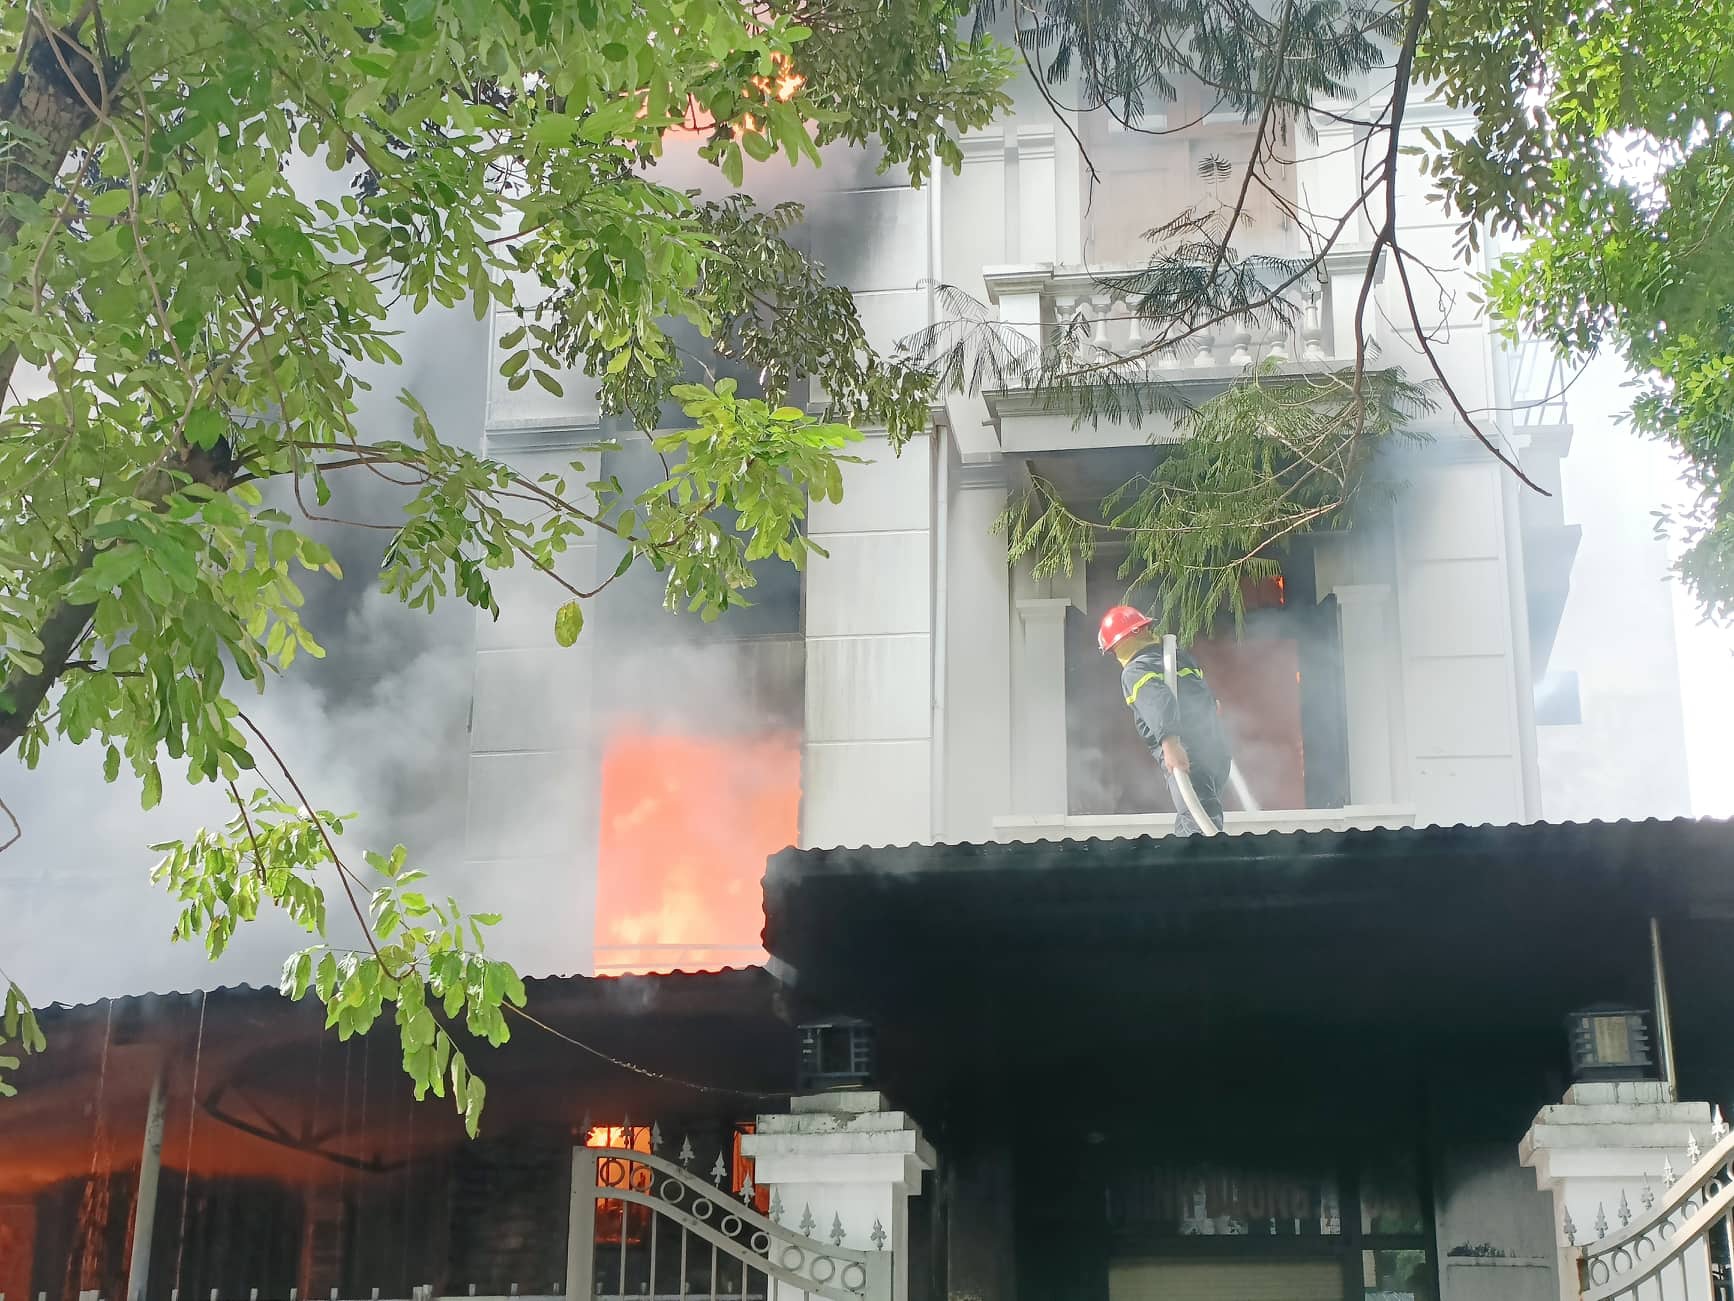 Ngôi nhà 3 tầng cháy dữ dội, một chiến sĩ cứu hỏa bị thương - Ảnh 2.